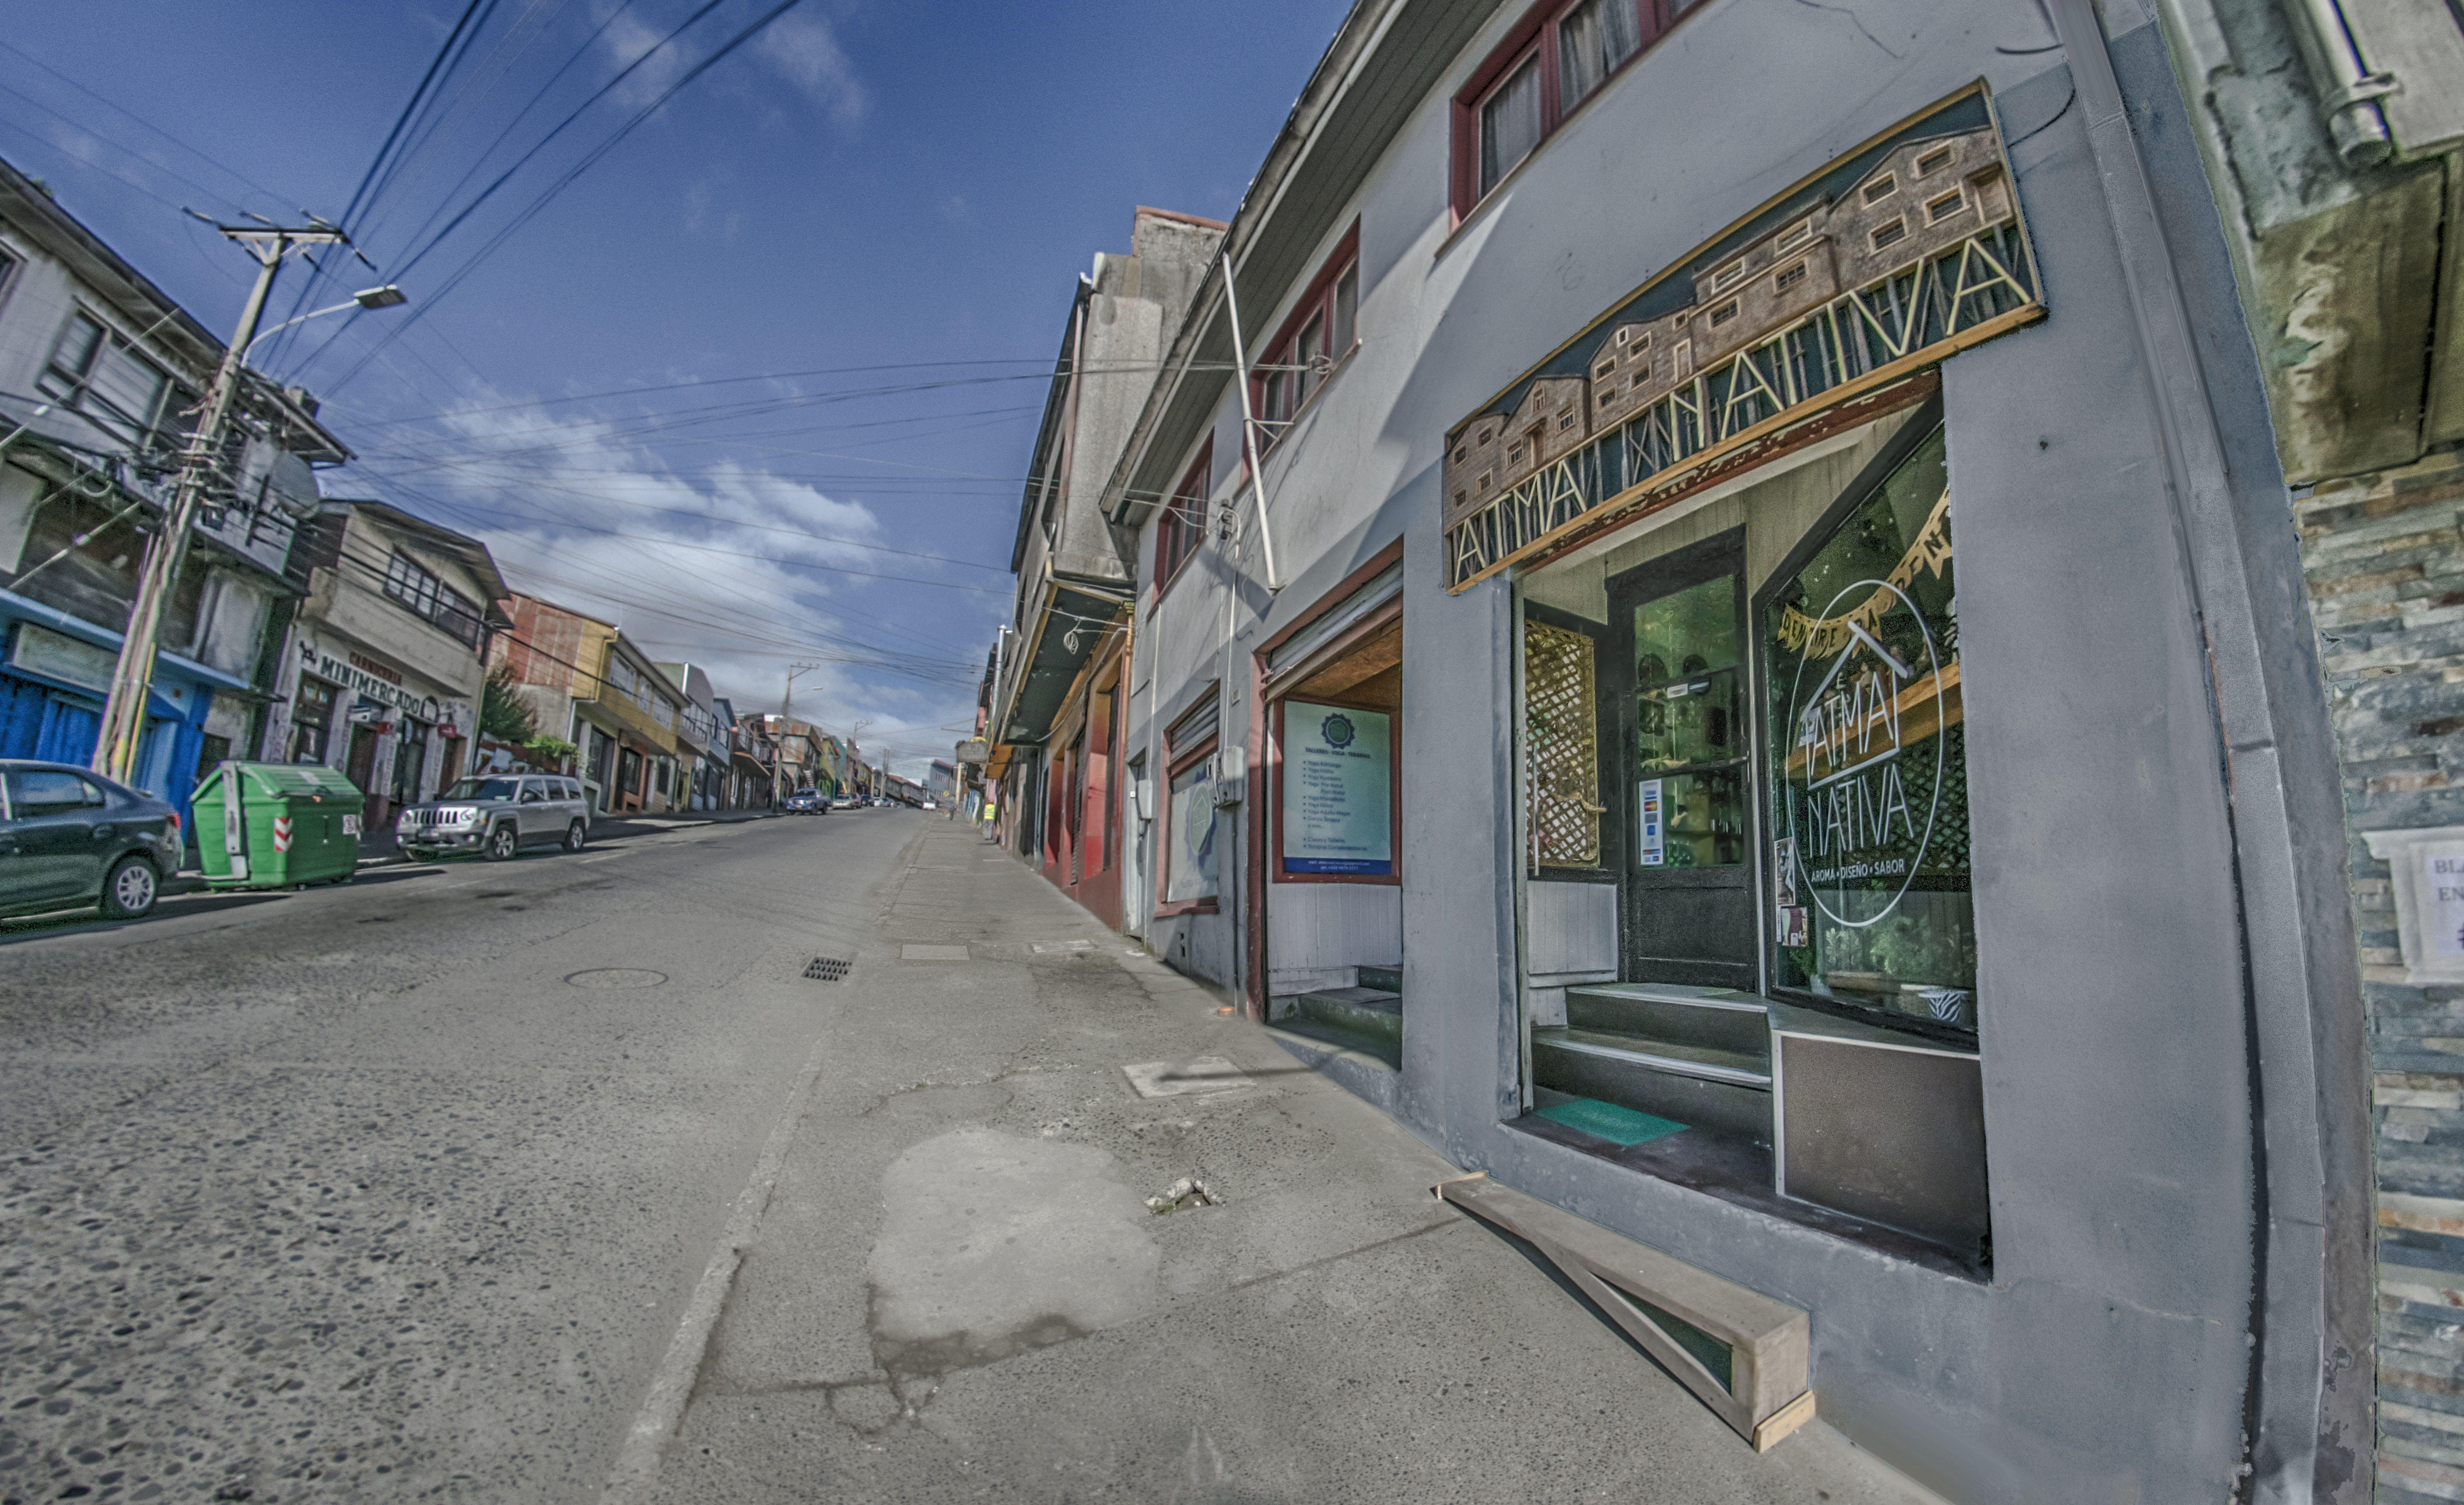 Calle blanco encalada. castro - chiloé - chile. photo